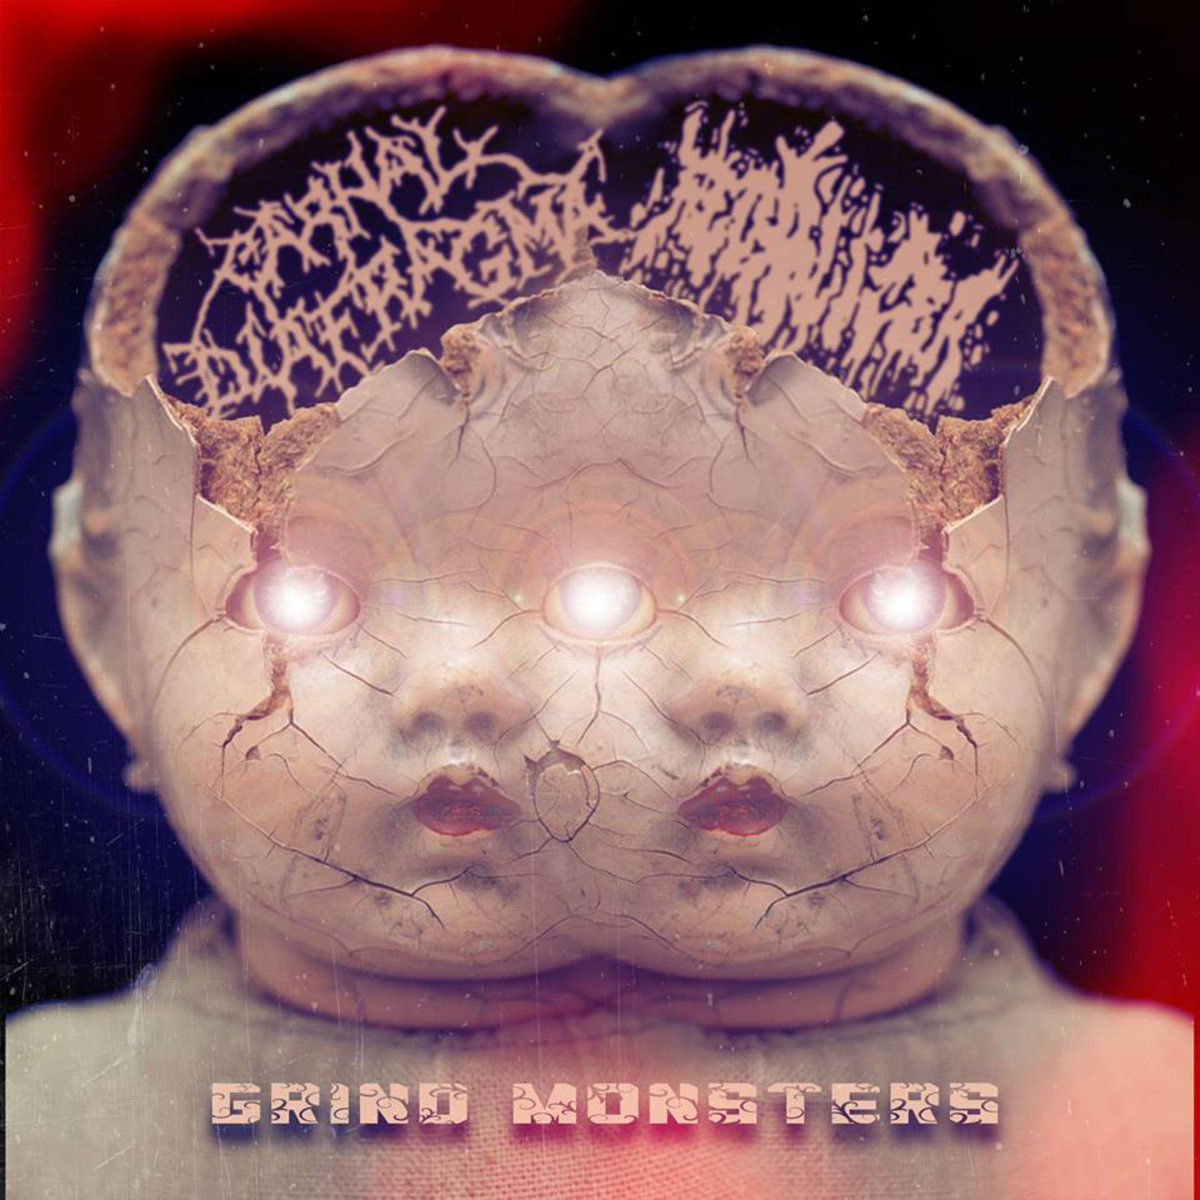 Goregrind Brutal Death Metal/Grindcore (D)(D8) 